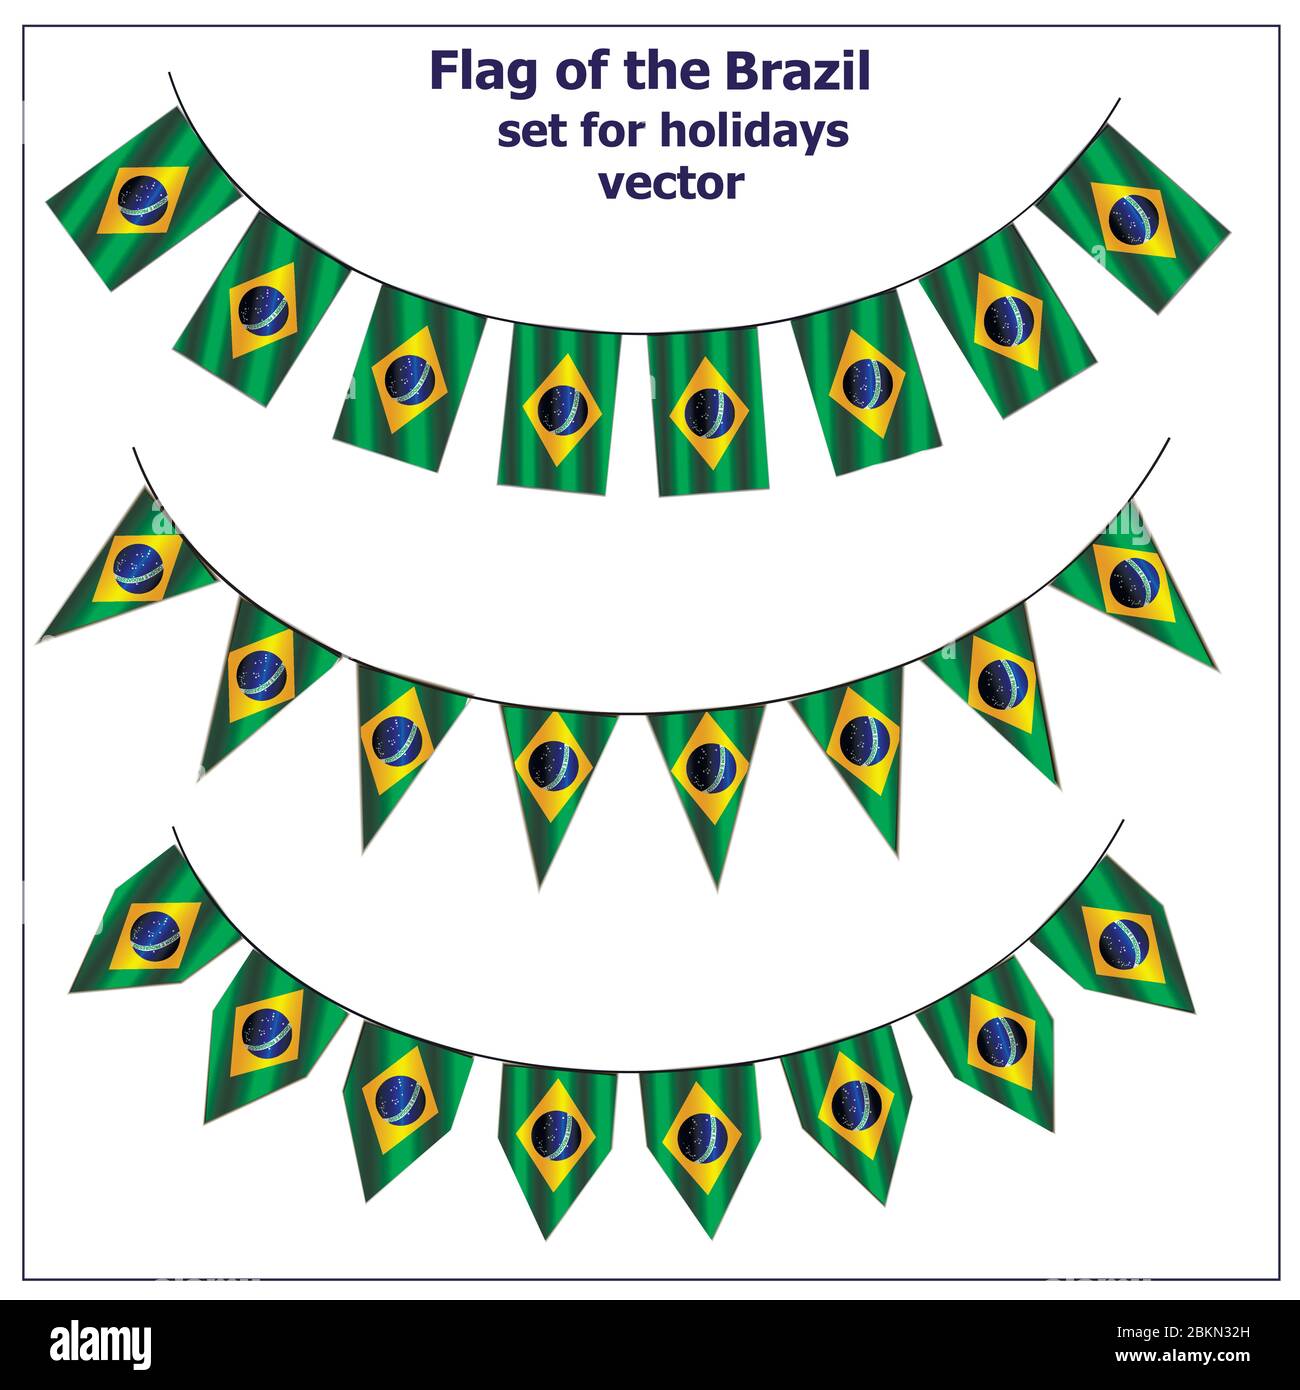 Pour des vacances avec le drapeau du Brésil. Bonne journée au Brésil. Illustration vectorielle avec fond blanc. Illustration de Vecteur